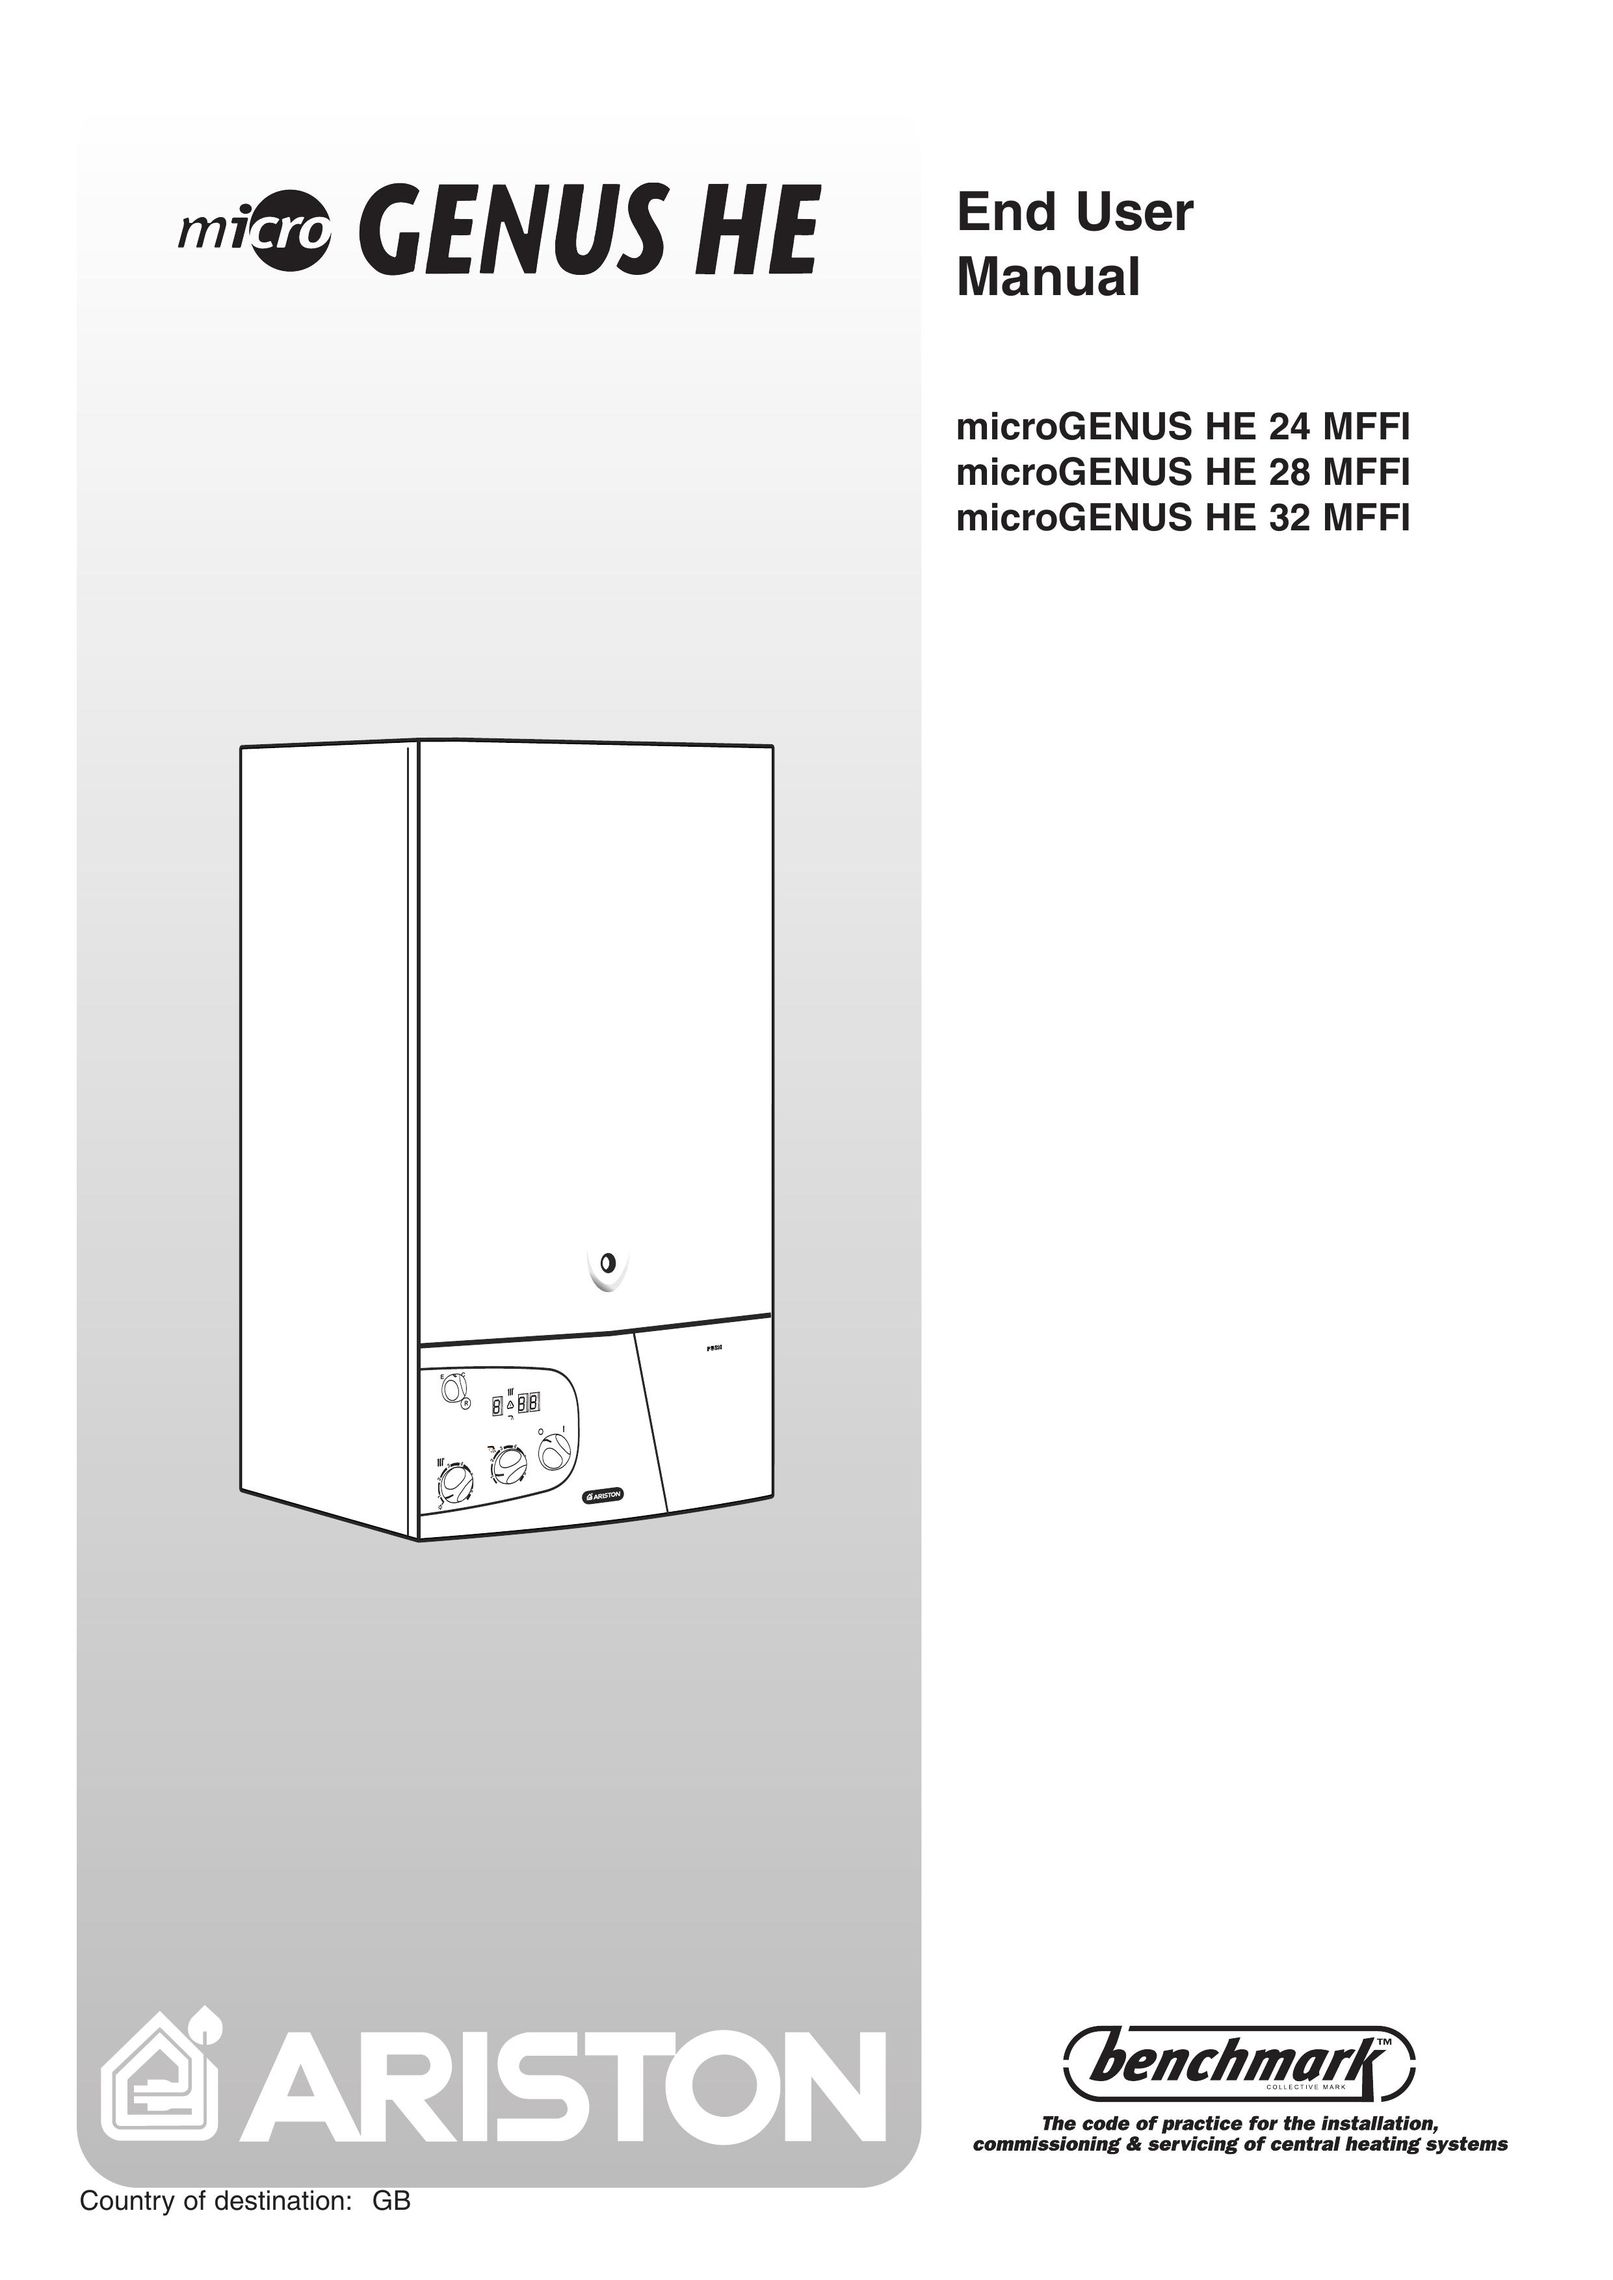 Ariston 28 MFFI Boiler User Manual (Page 1)